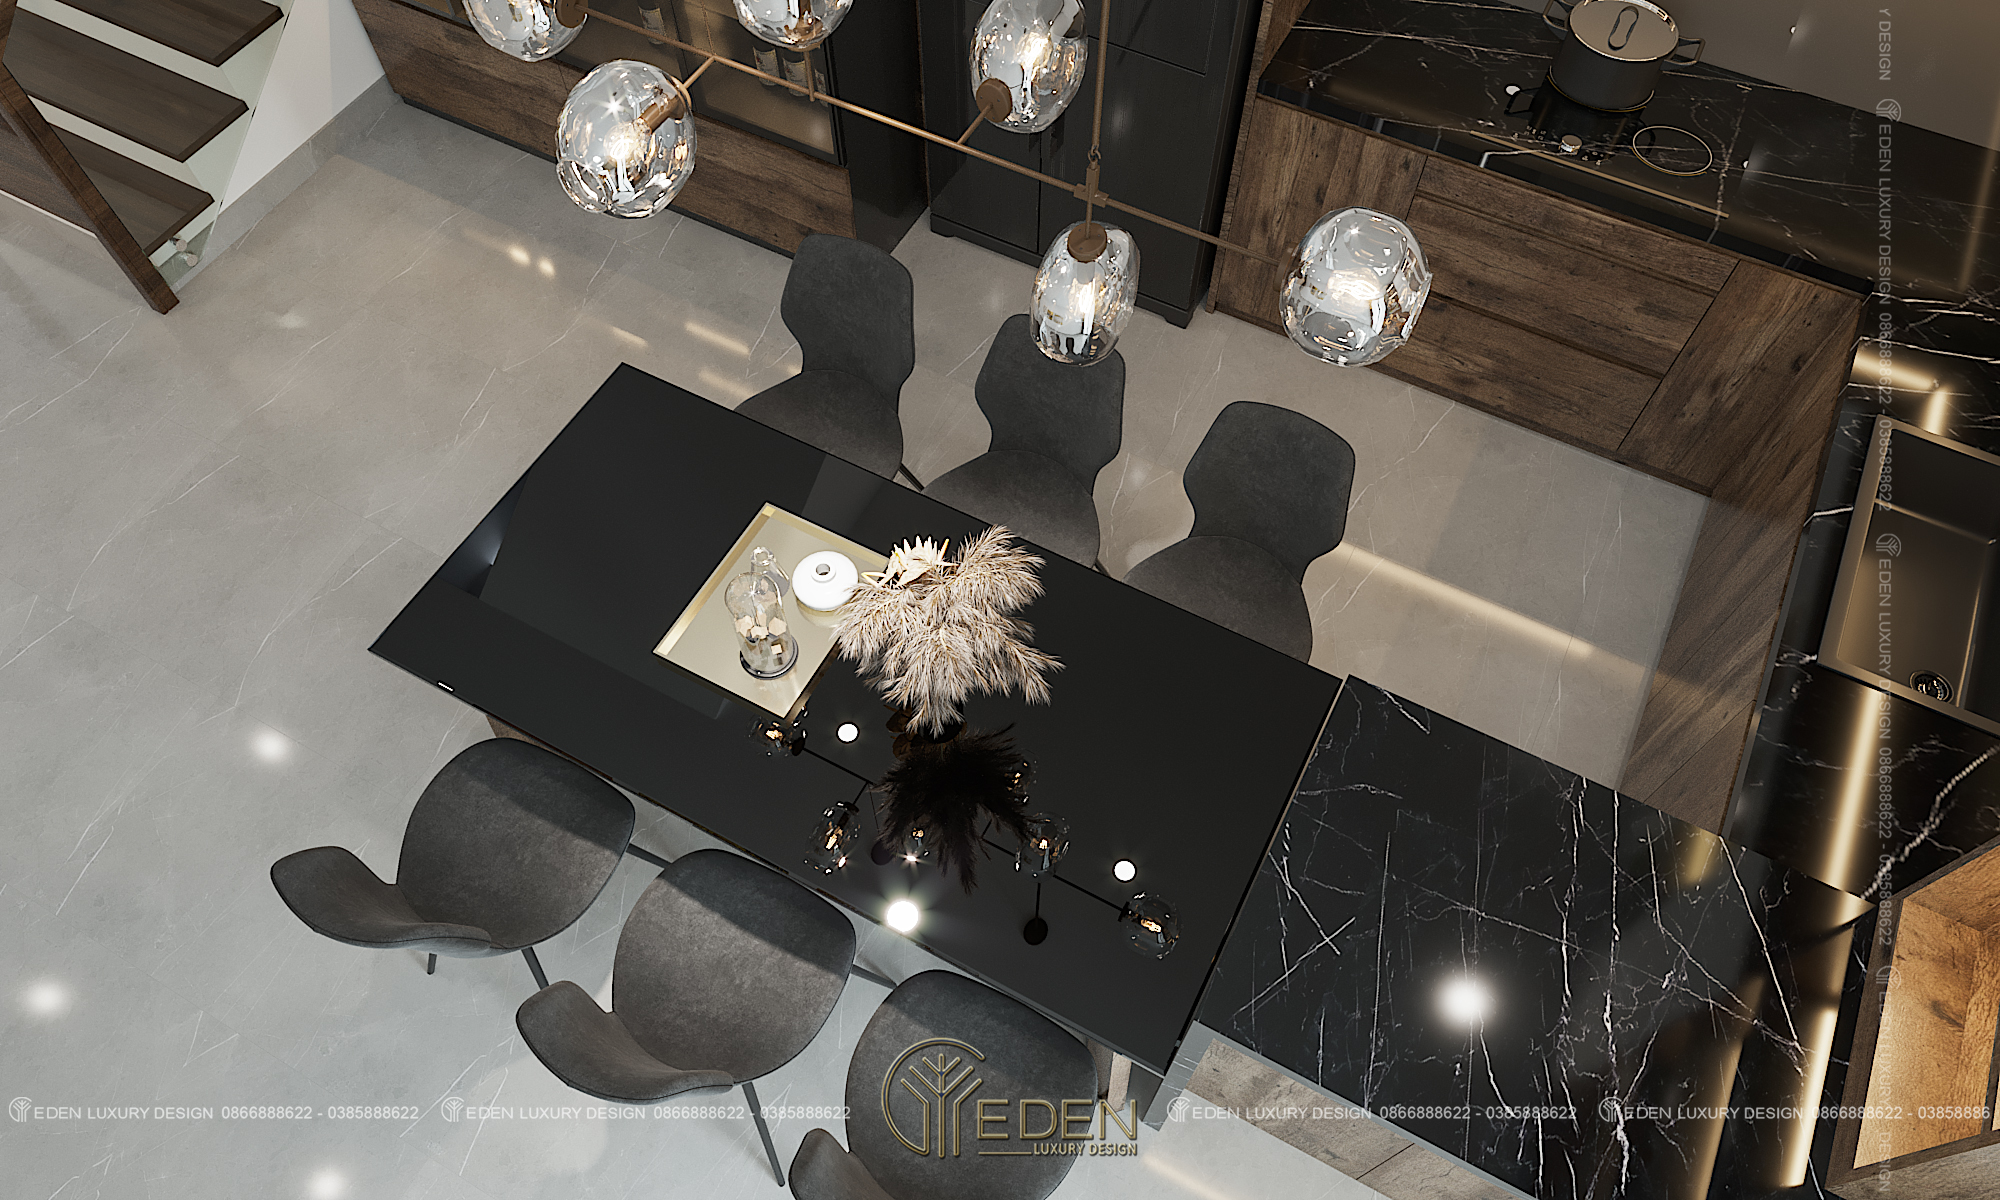 Mặt bàn, ghế và bàn bếp màu đen tôn lên vẻ sang trọng, hiện đại và cá tính.